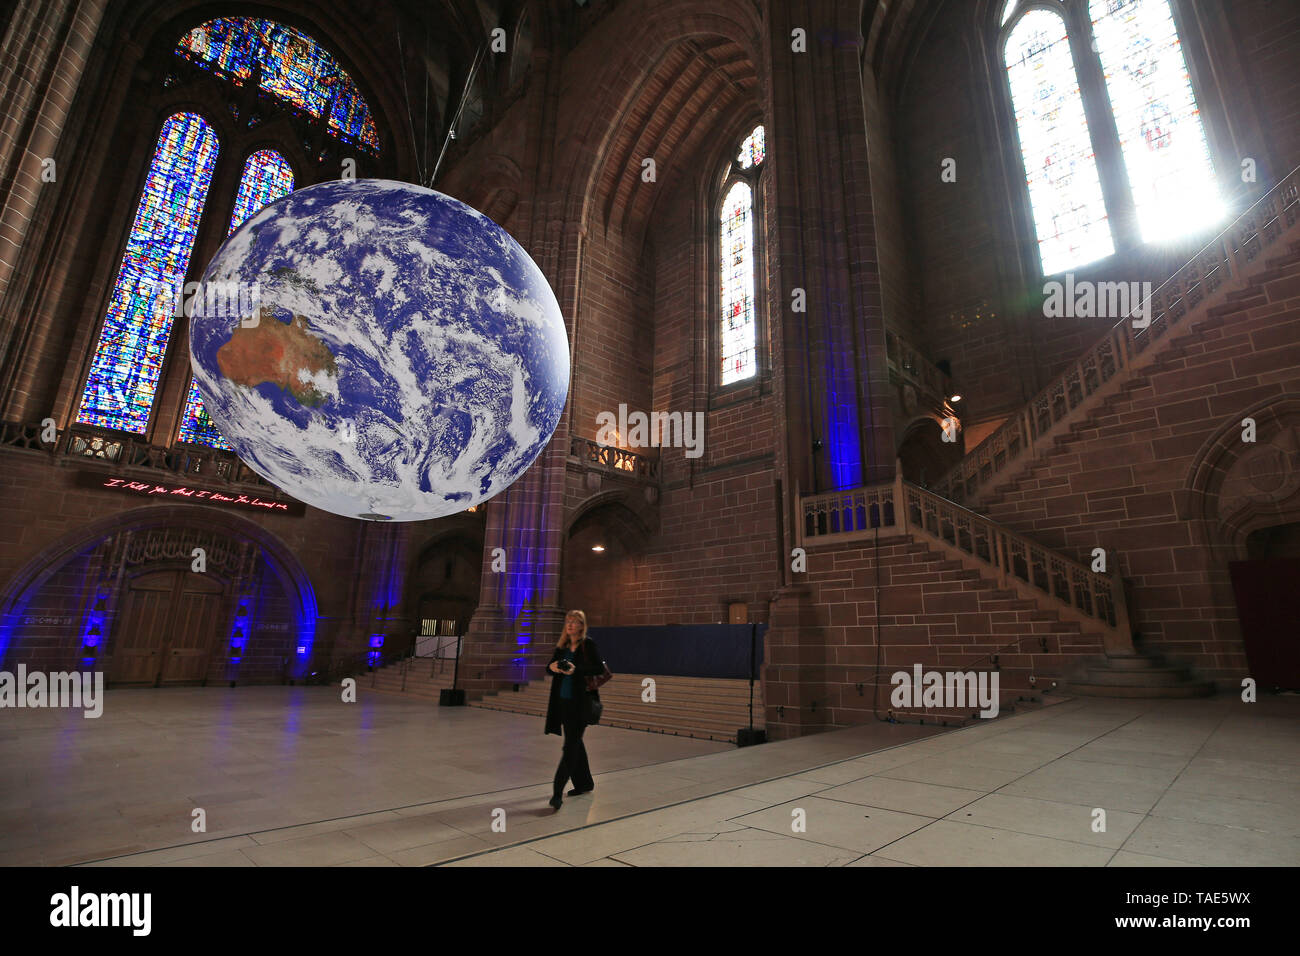 Gaia, ein 23 ft Replik des Planeten Erde hängt, auf der Kathedrale von Liverpool vor der Stadt River Festival. Die große Installation, erstellt von der britische Künstler Luke Jerram, verfügt über genaue und detaillierte Bilder von der NASA und ist auf dem Display zum ersten Mal irgendwo in der Welt. Stockfoto